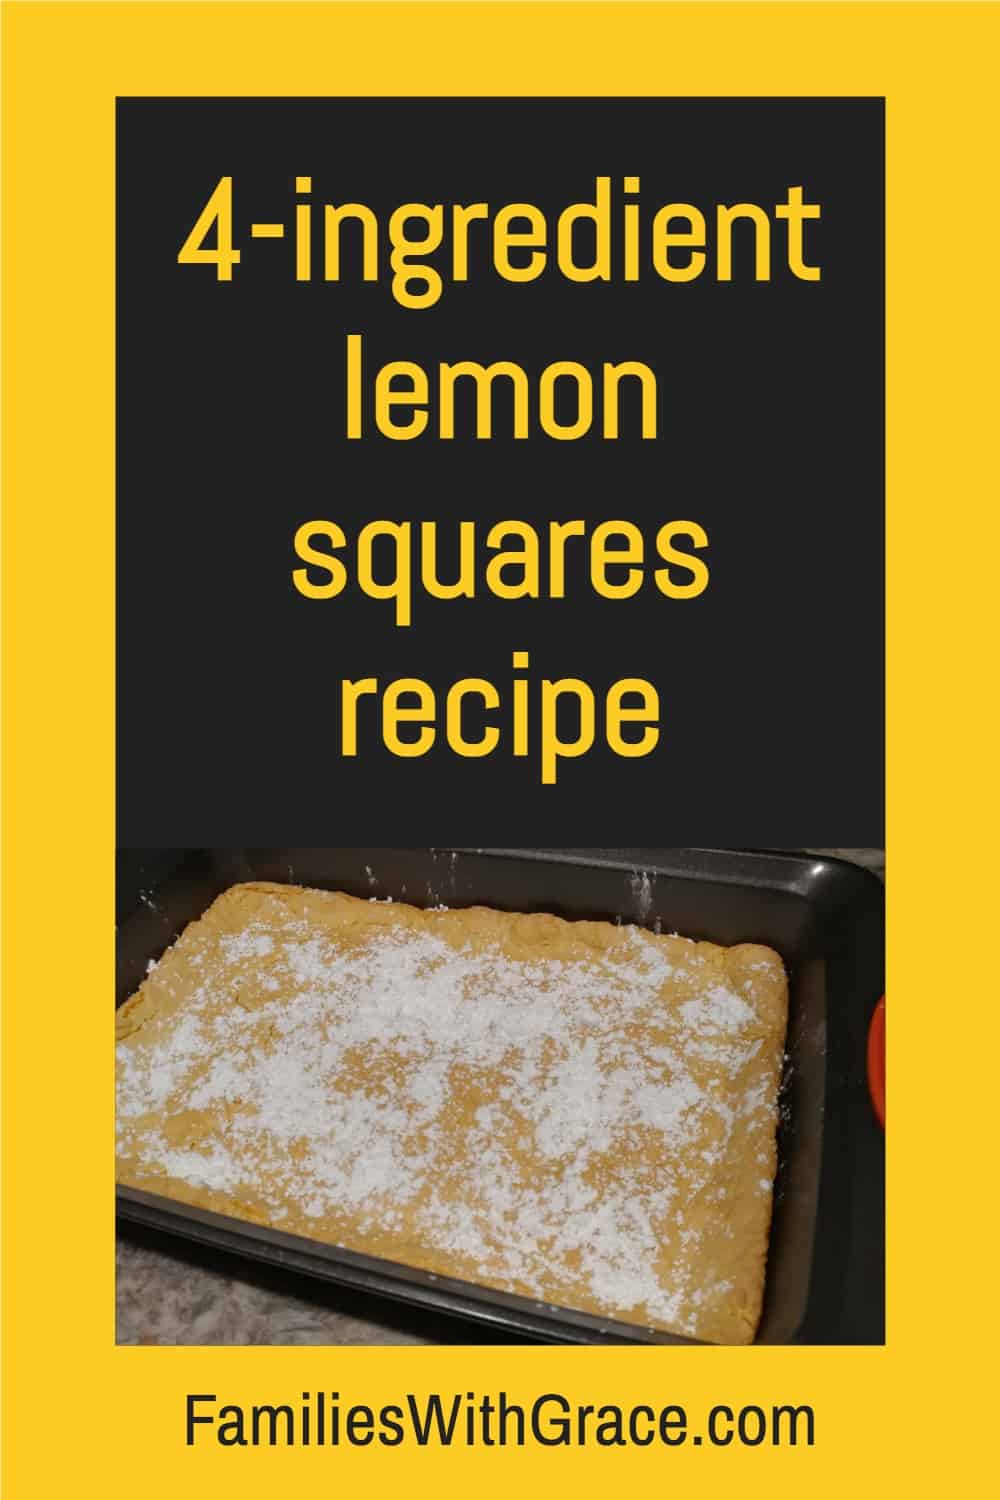 4-ingredient lemon squares recipe